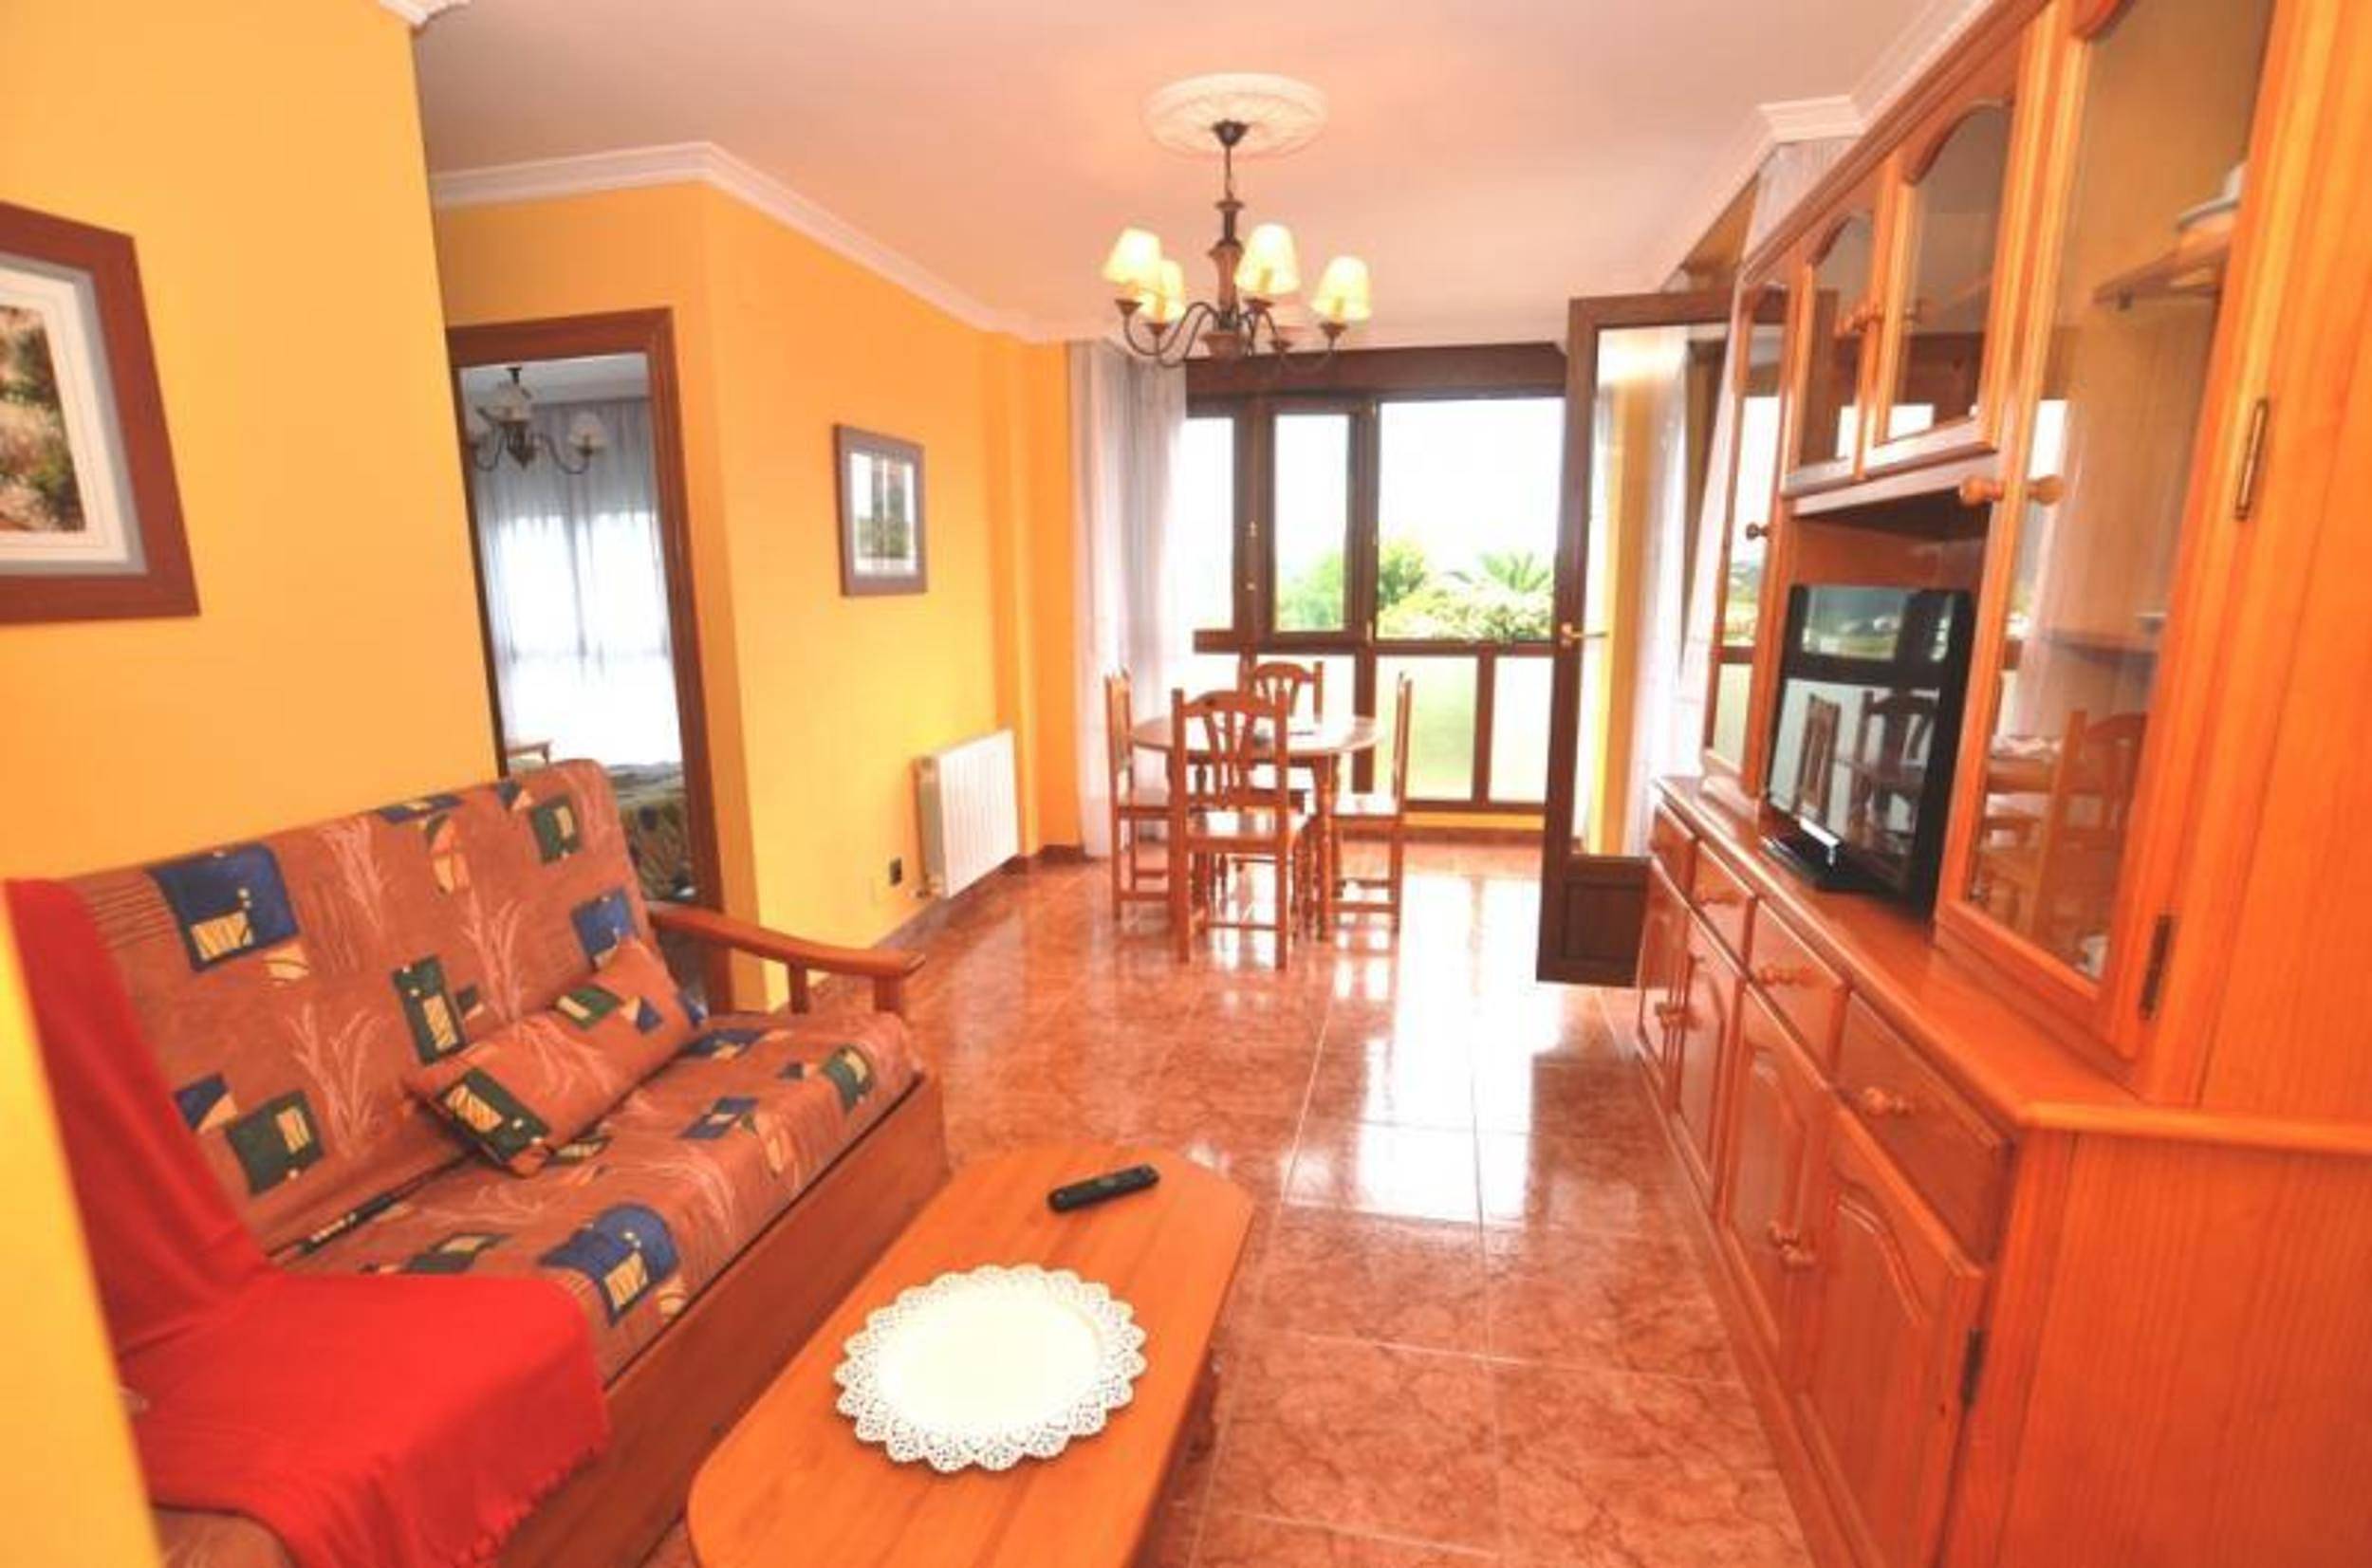 Alquiler vacaciones, apartamentos y casas rurales en Costa de Cantabria | Página 6